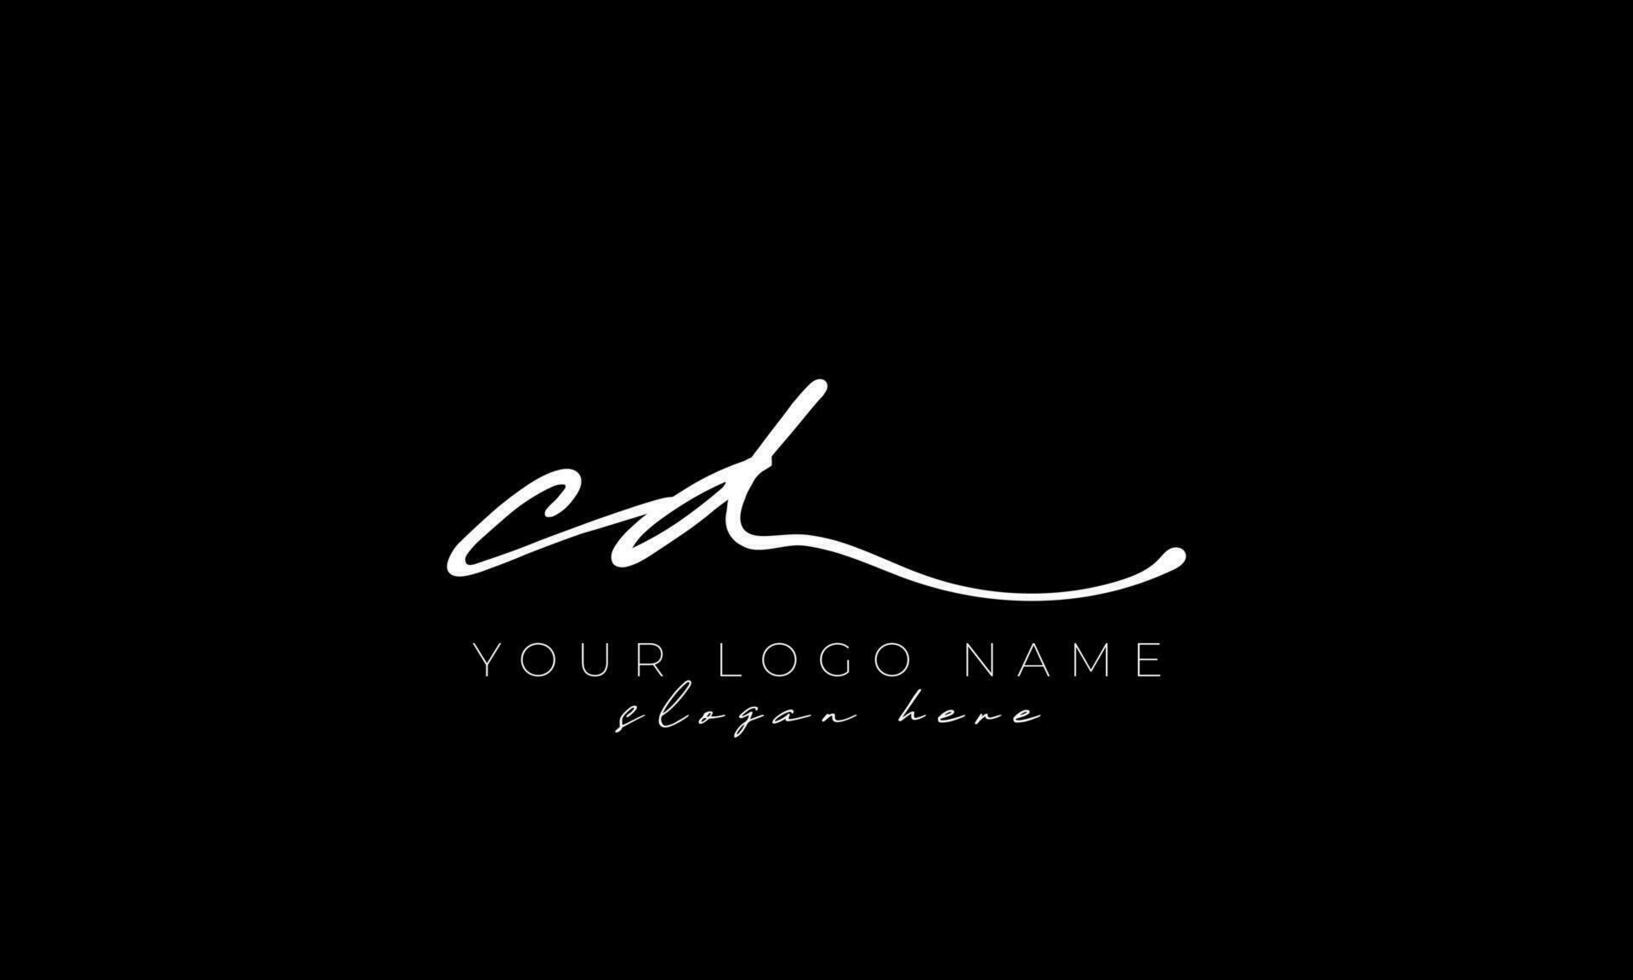 Handwriting letter CD logo design. CD logo design free vector template